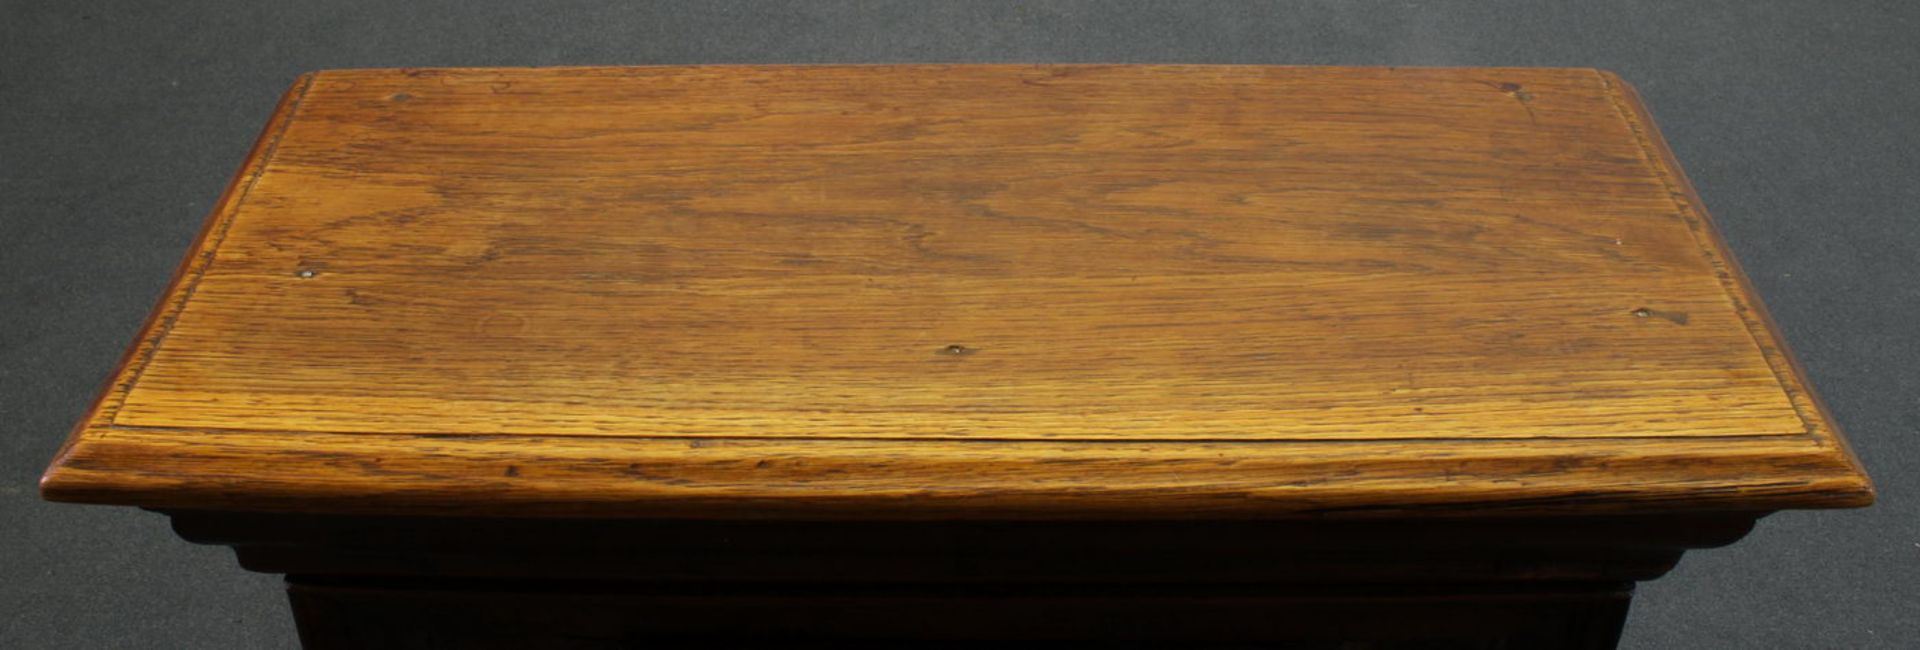 Schränkchen, deutsch, 18. Jh., Eiche, eintürig, untere Schublade, 78 x 66 x 32 cm - Image 2 of 2